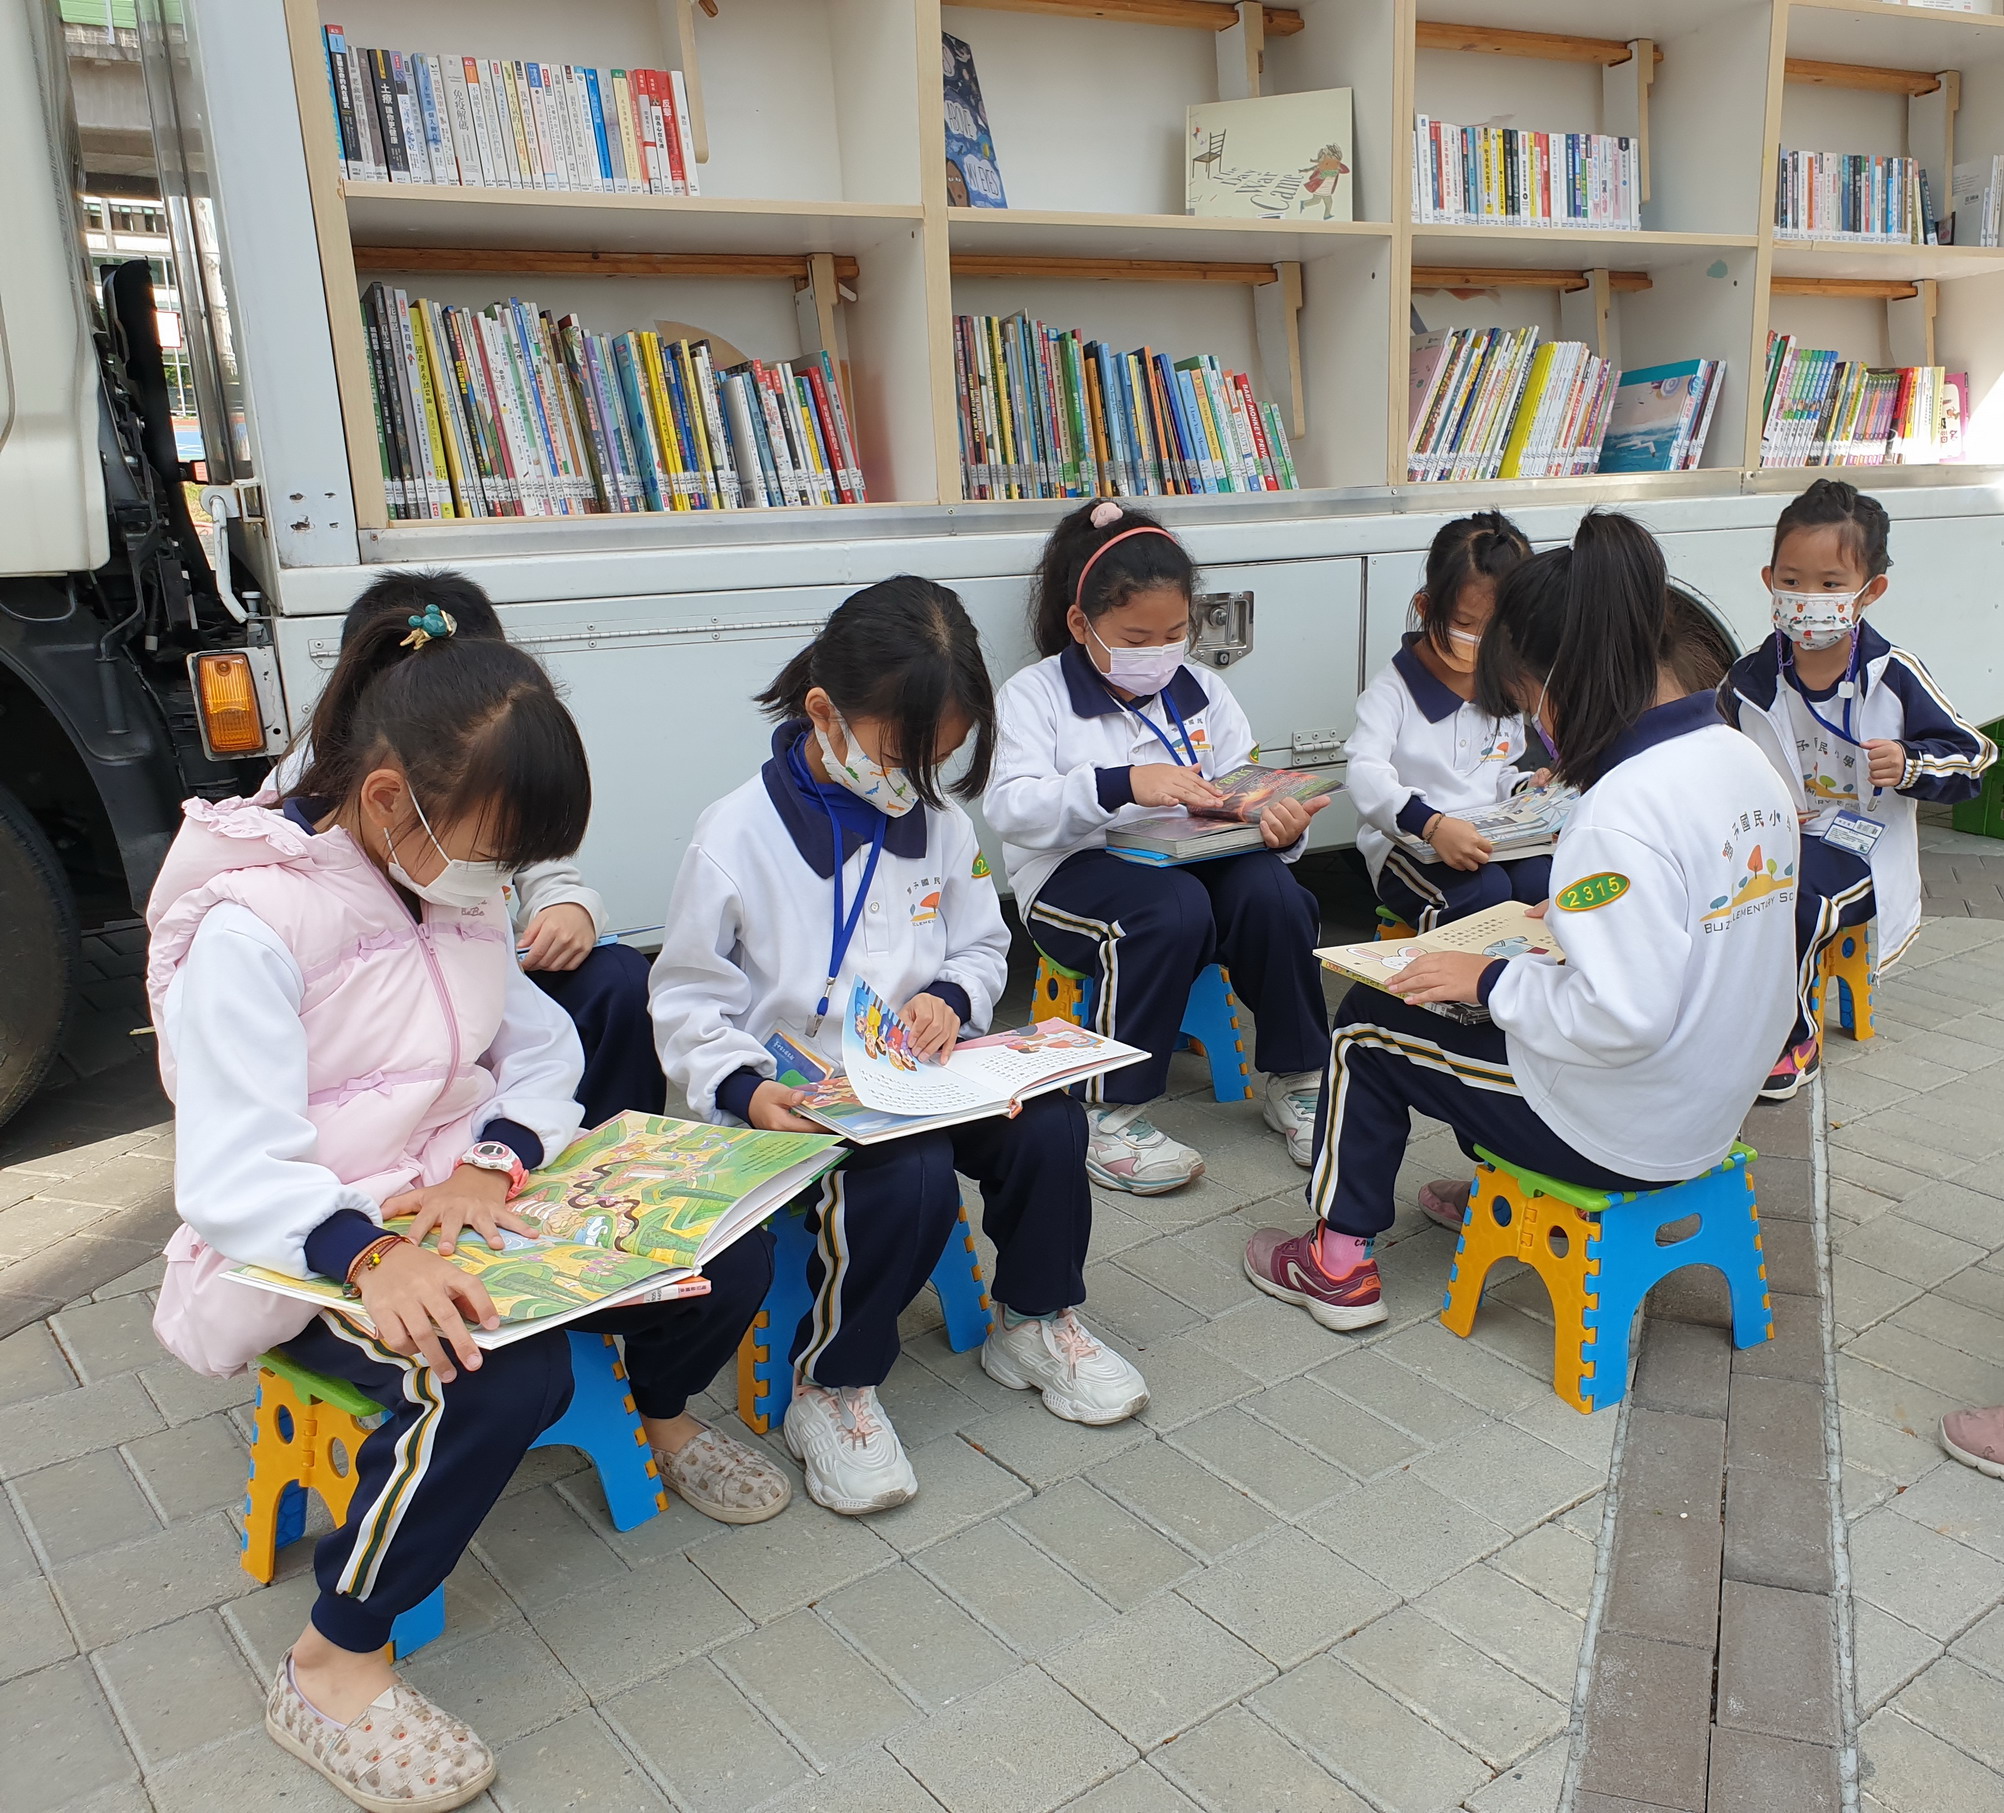 Mendorong setiap kelas untuk berbagi buku, bersama-sama membuat perpustakaan kecil. (Sumber: Dinas Kebudayaan Taichung)